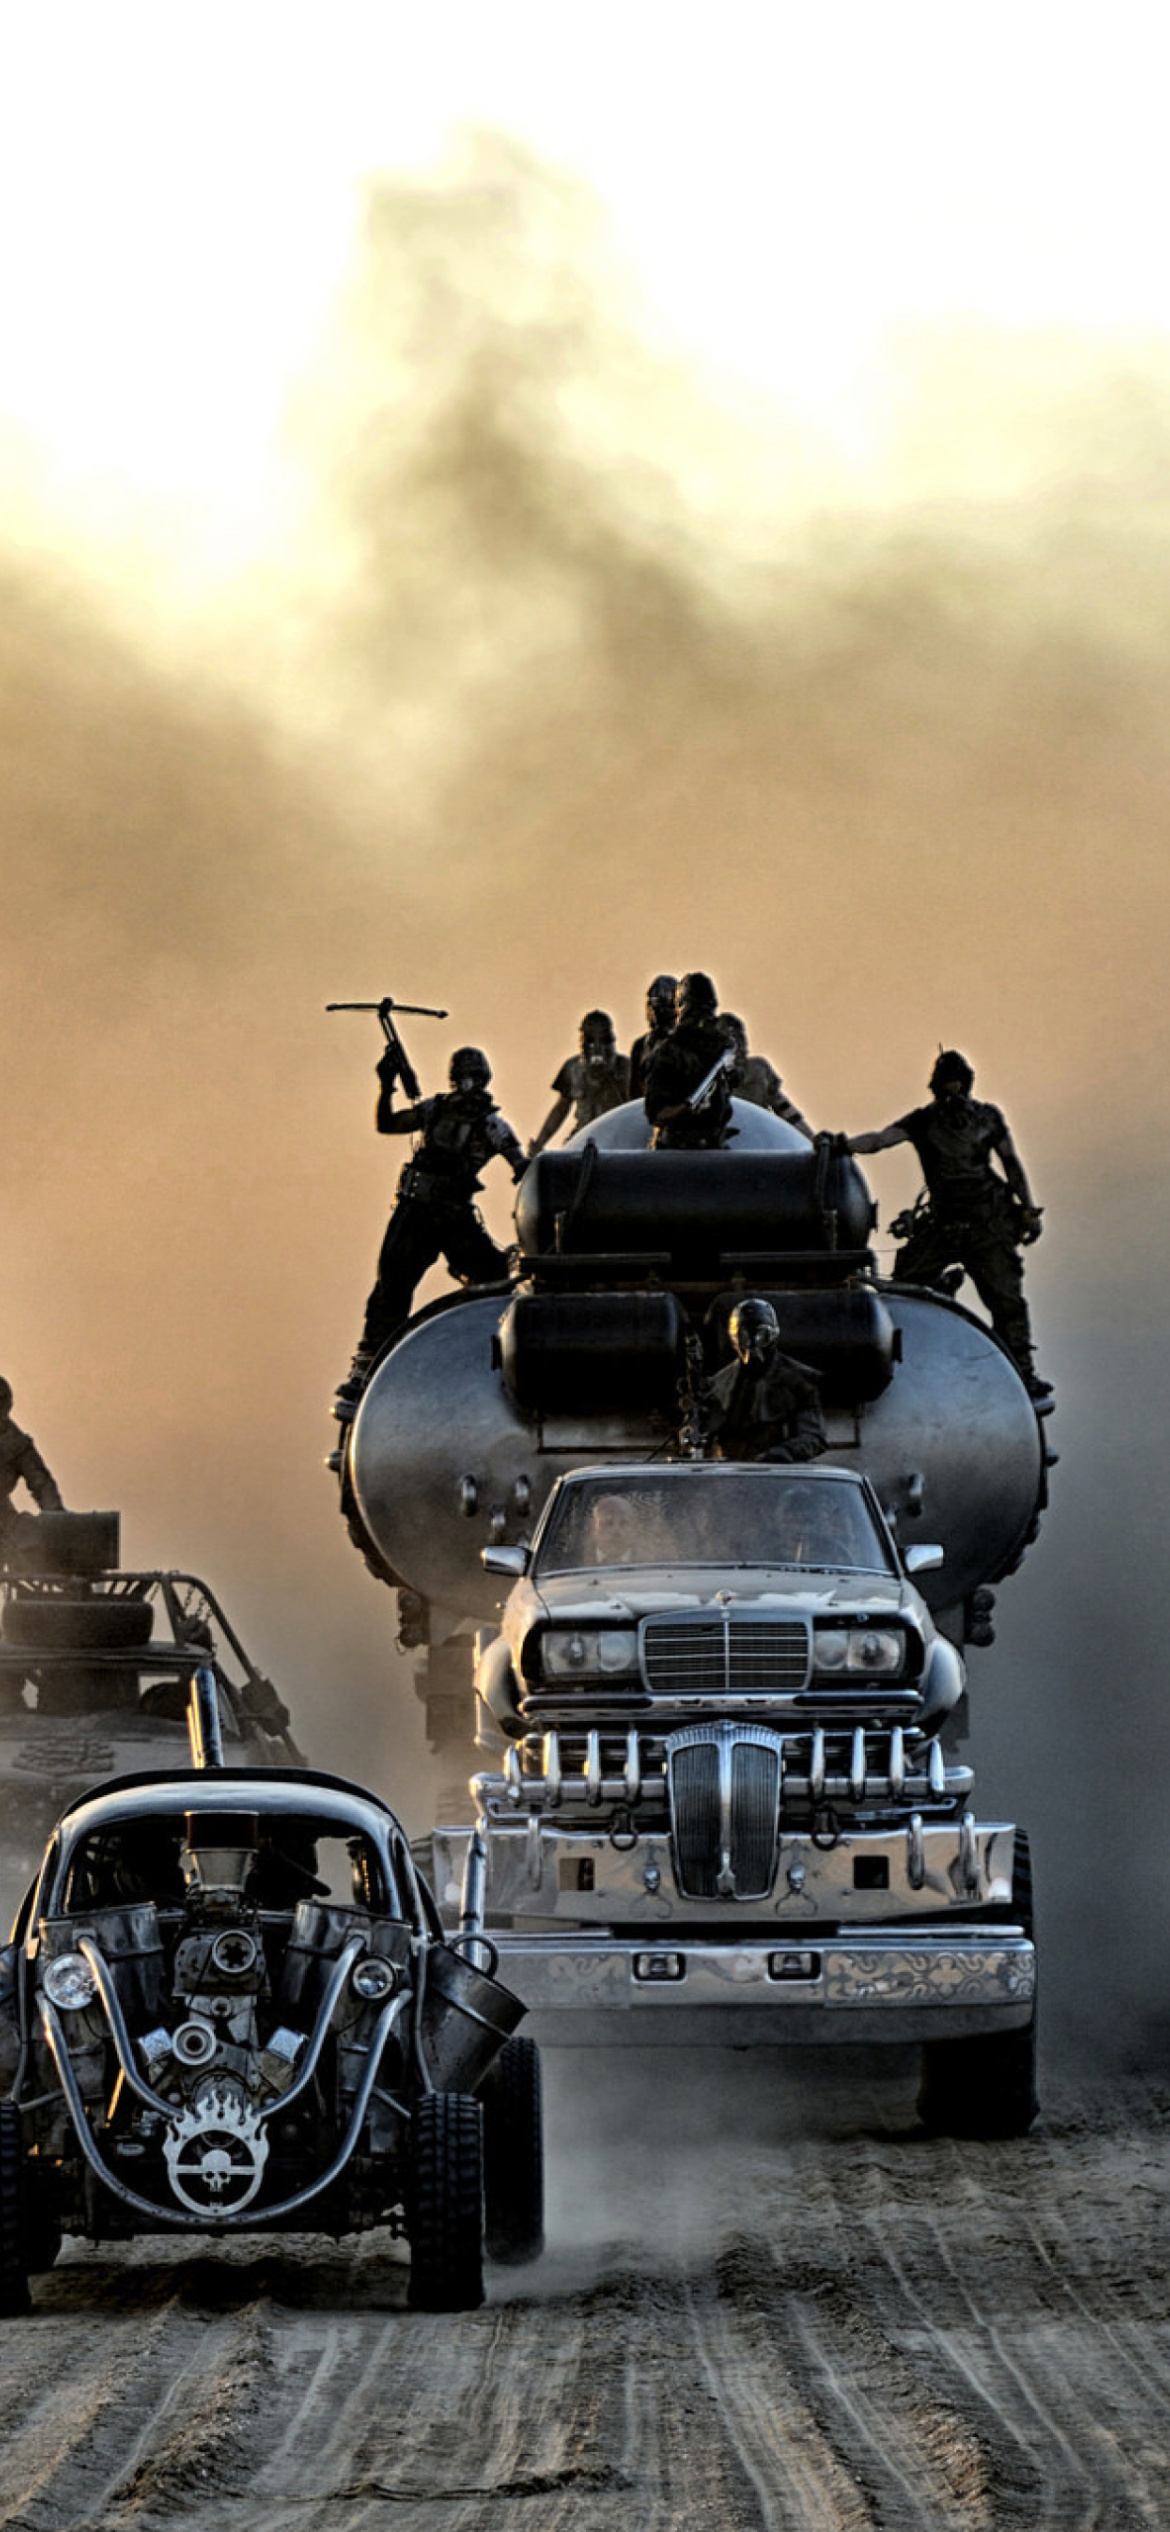 Mad Max Fury Road wallpaper 1170x2532